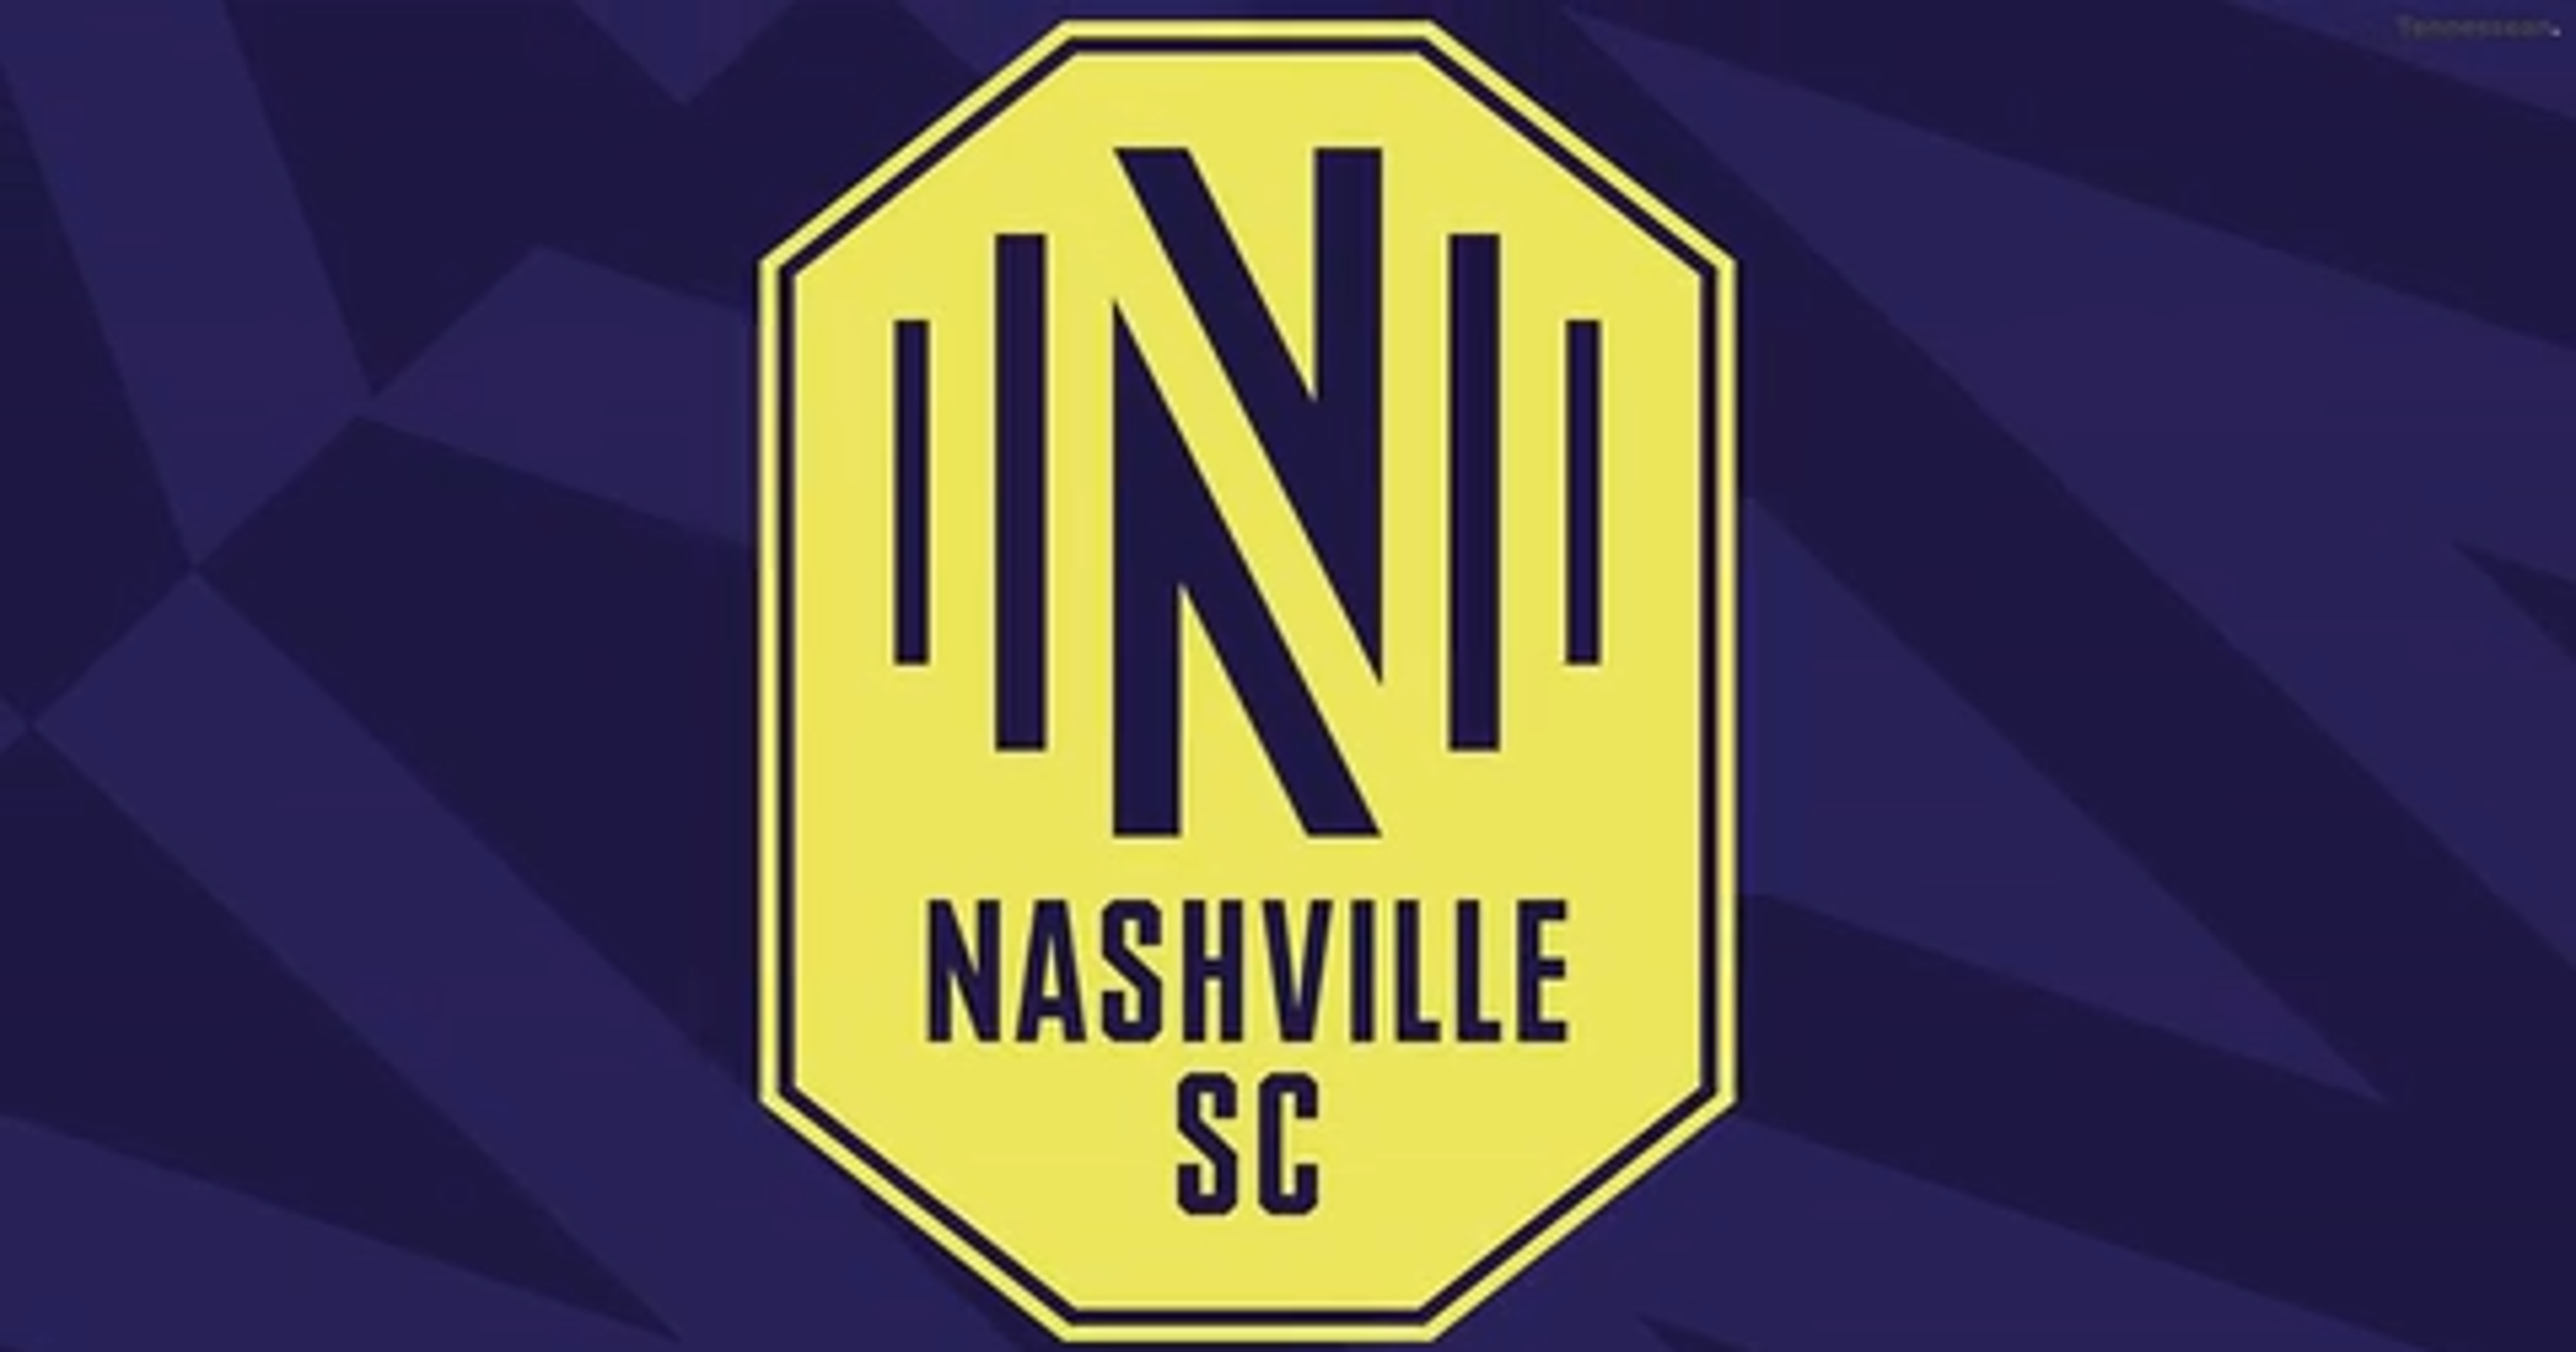 Nashville MLS team name is Nashville SC, new soccer logo revealed